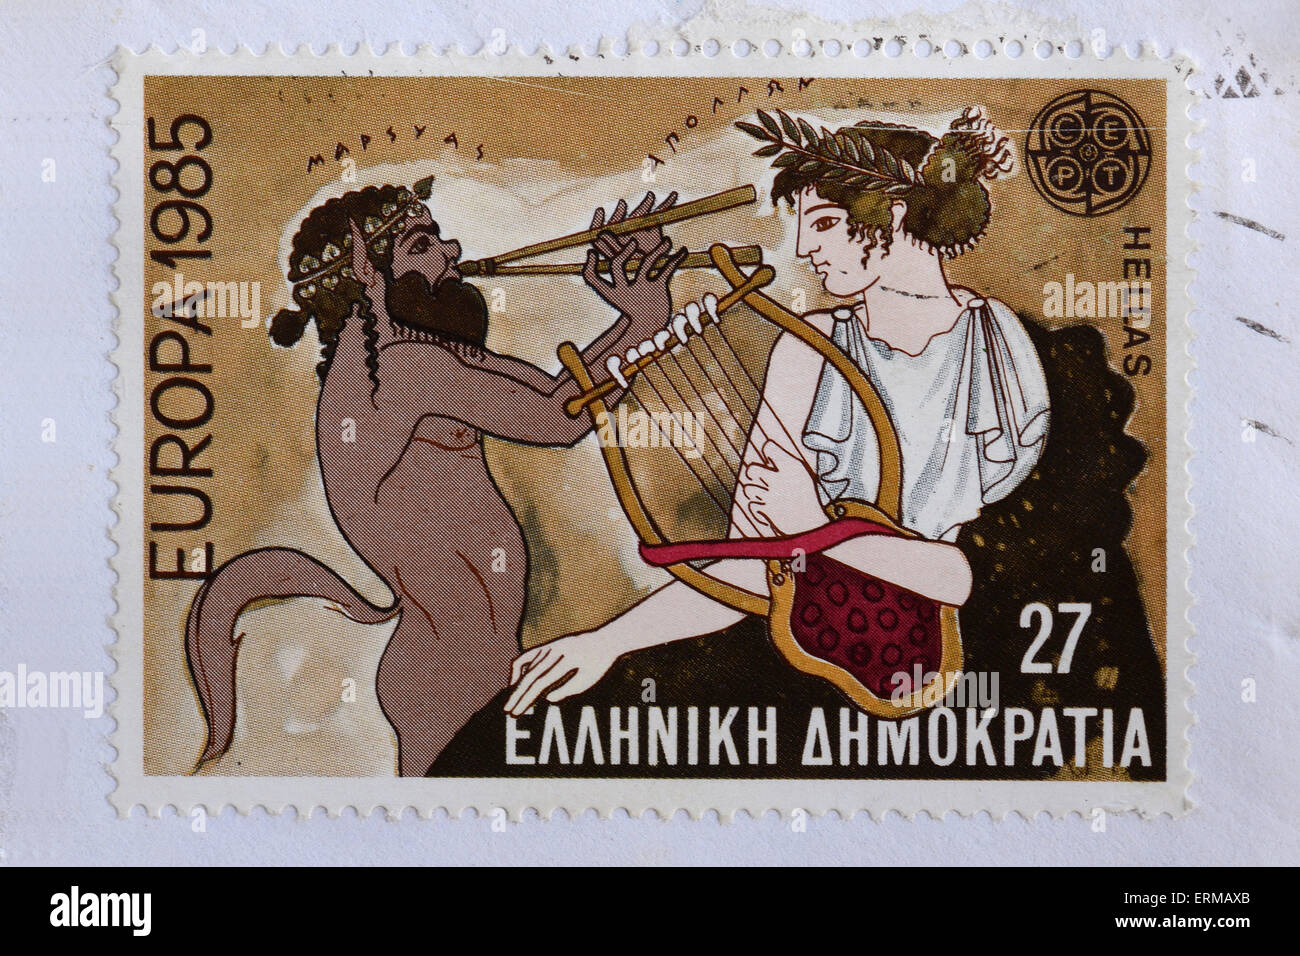 Sello Vintage muestra Marsyas la mitología griega sátiro con flauta aulos doble sobre música desafío contra Apollo. Foto de stock